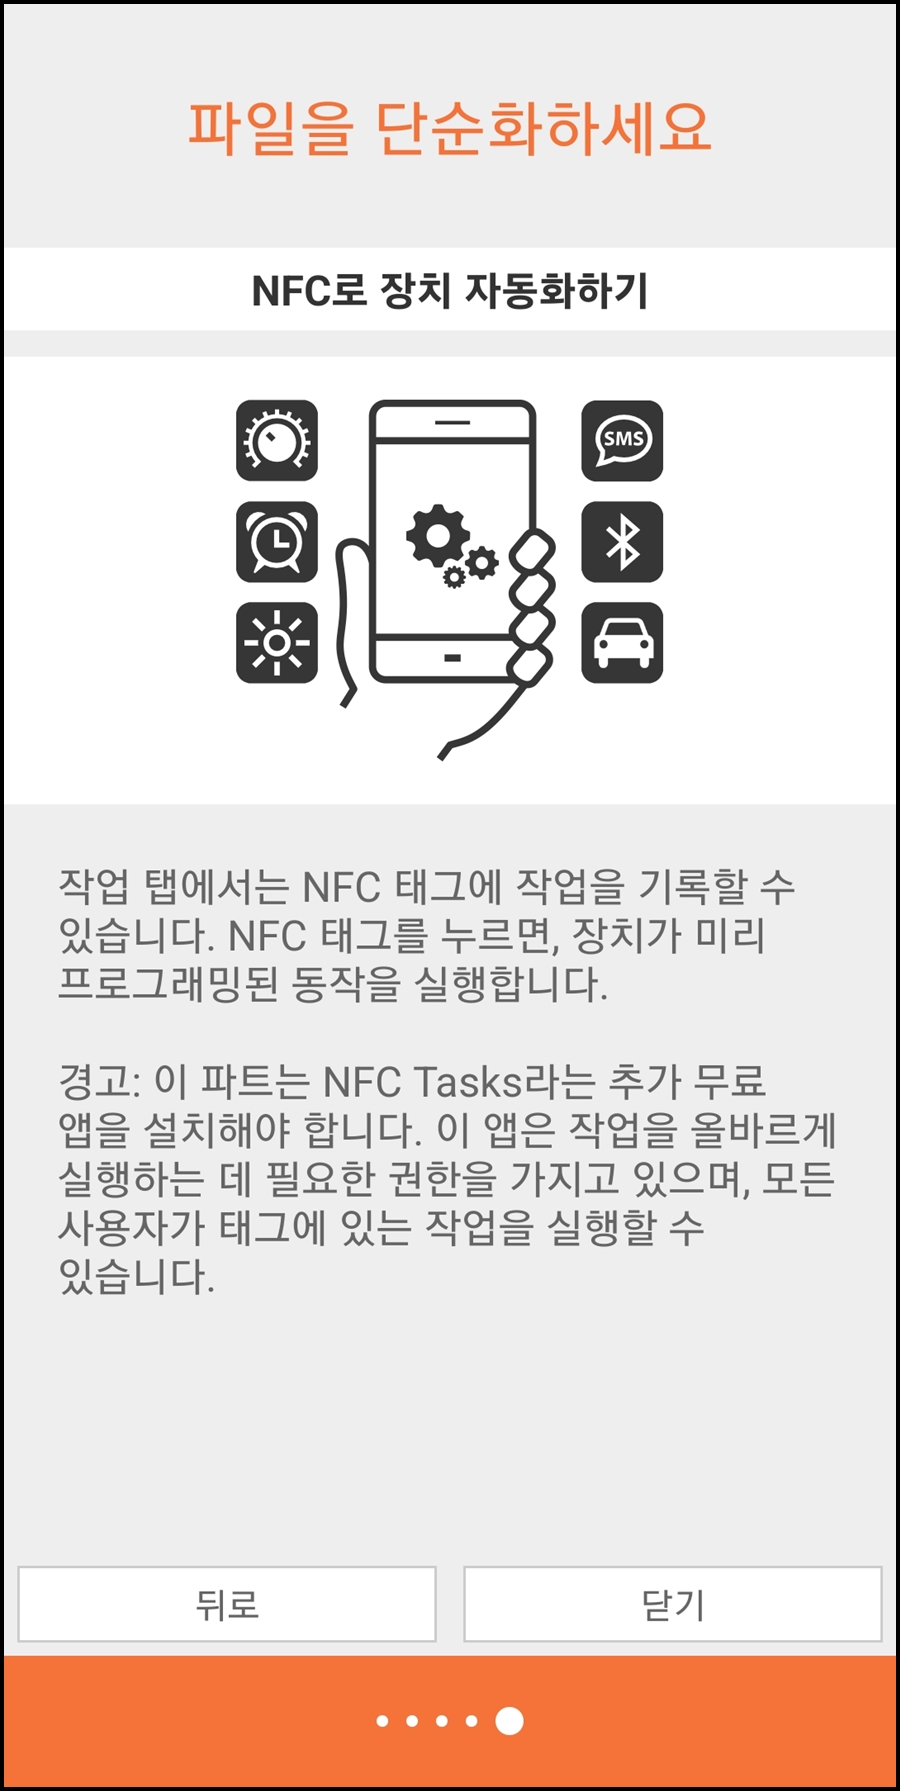 NFC 자동화